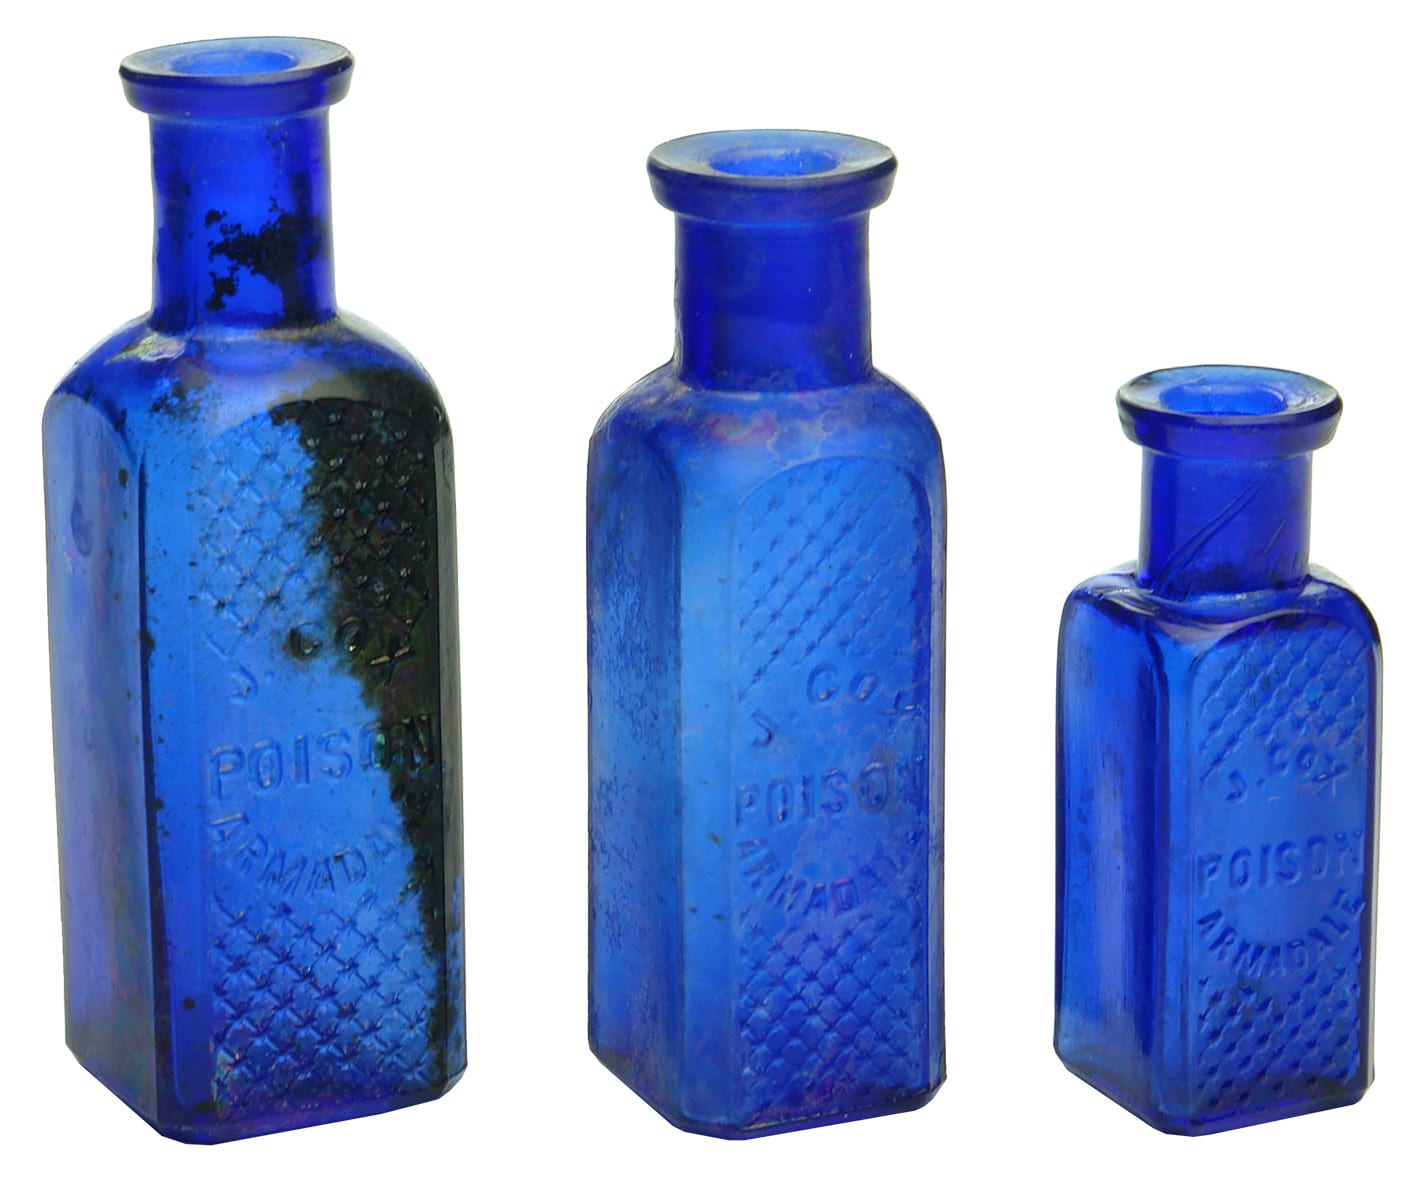 Cox Poison Armadale Antique Cobalt Blue Bottles